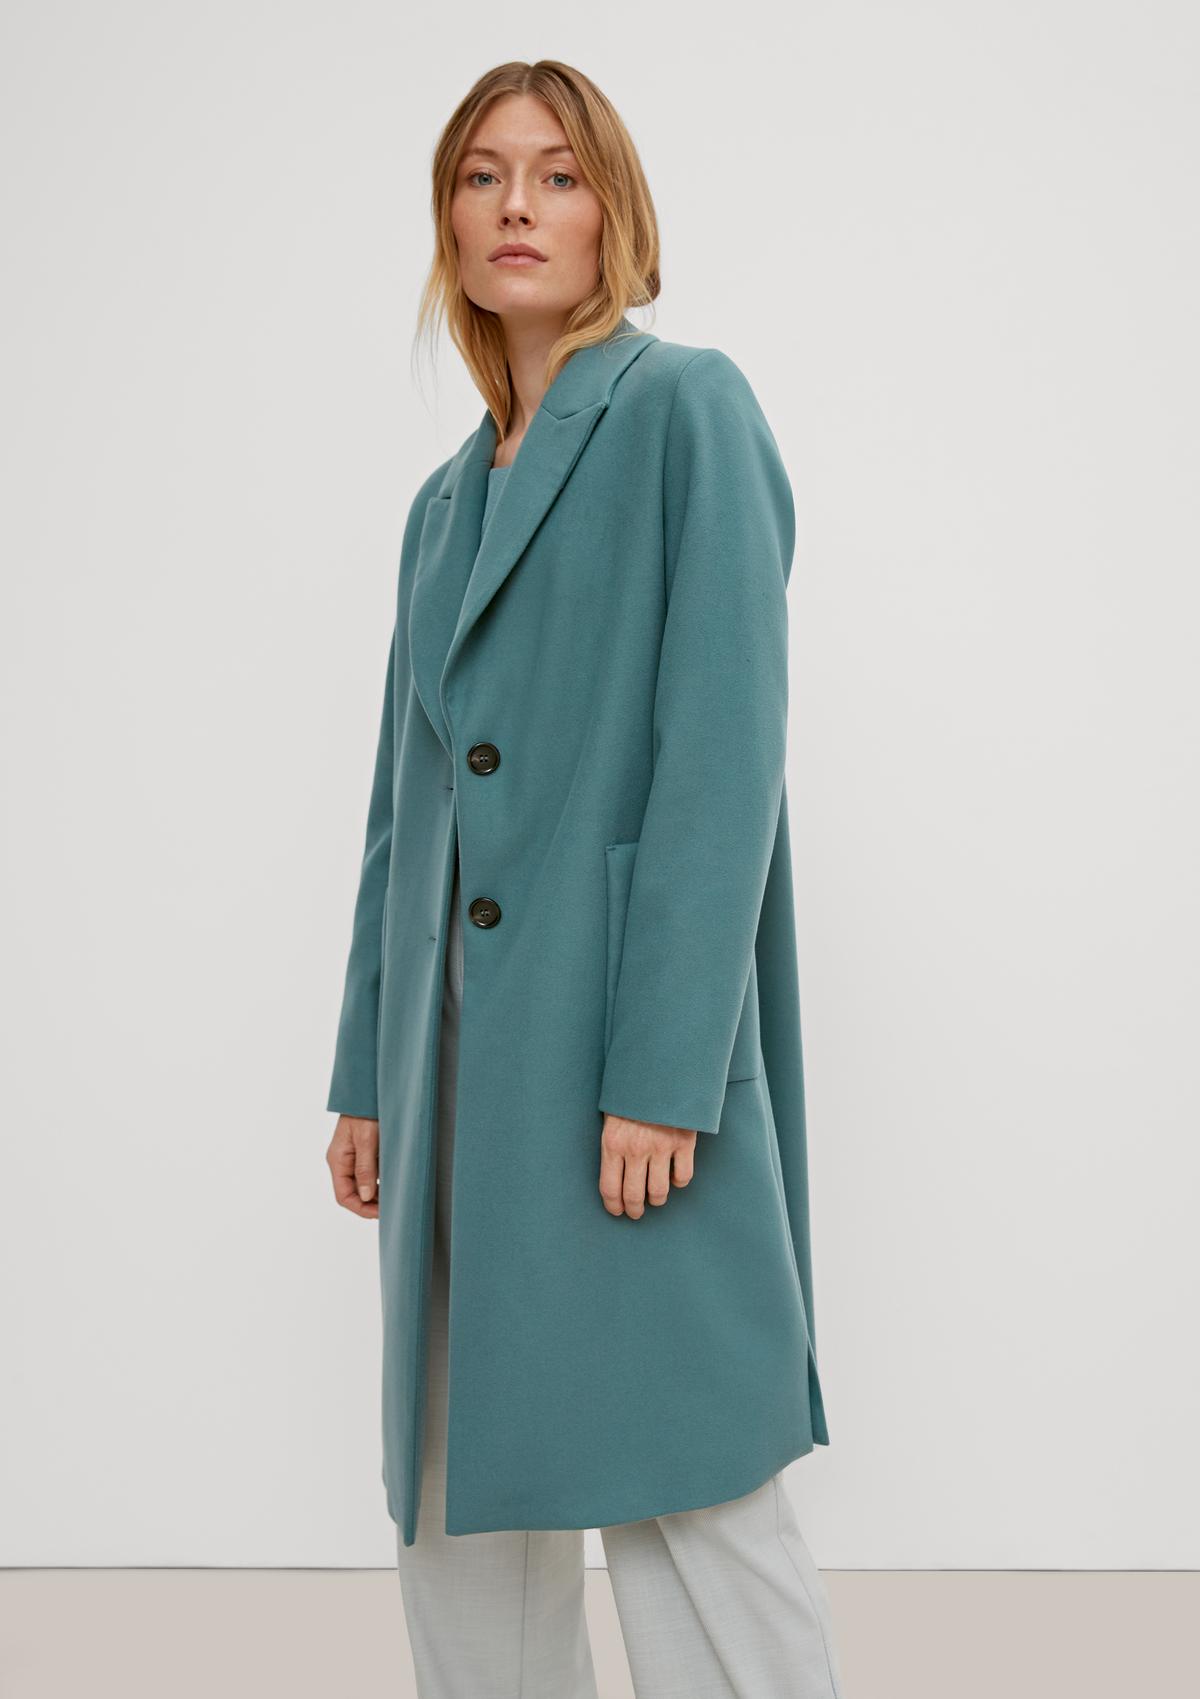 Wool-look blazer coat